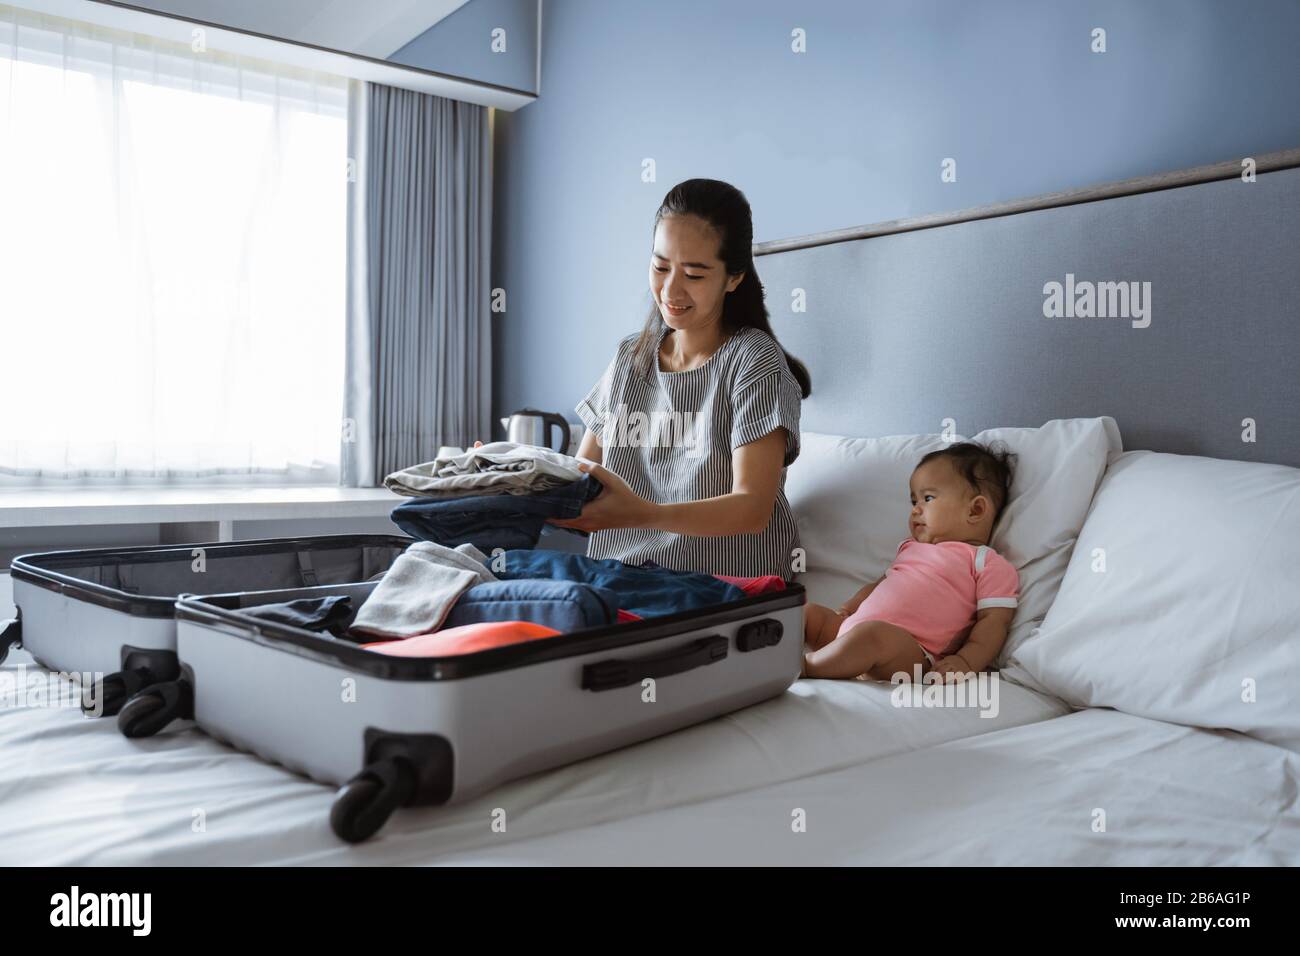 Baby sitzt neben der Mutter und bereitet Kleidung zum Einlegen in den Koffer vor Stockfoto